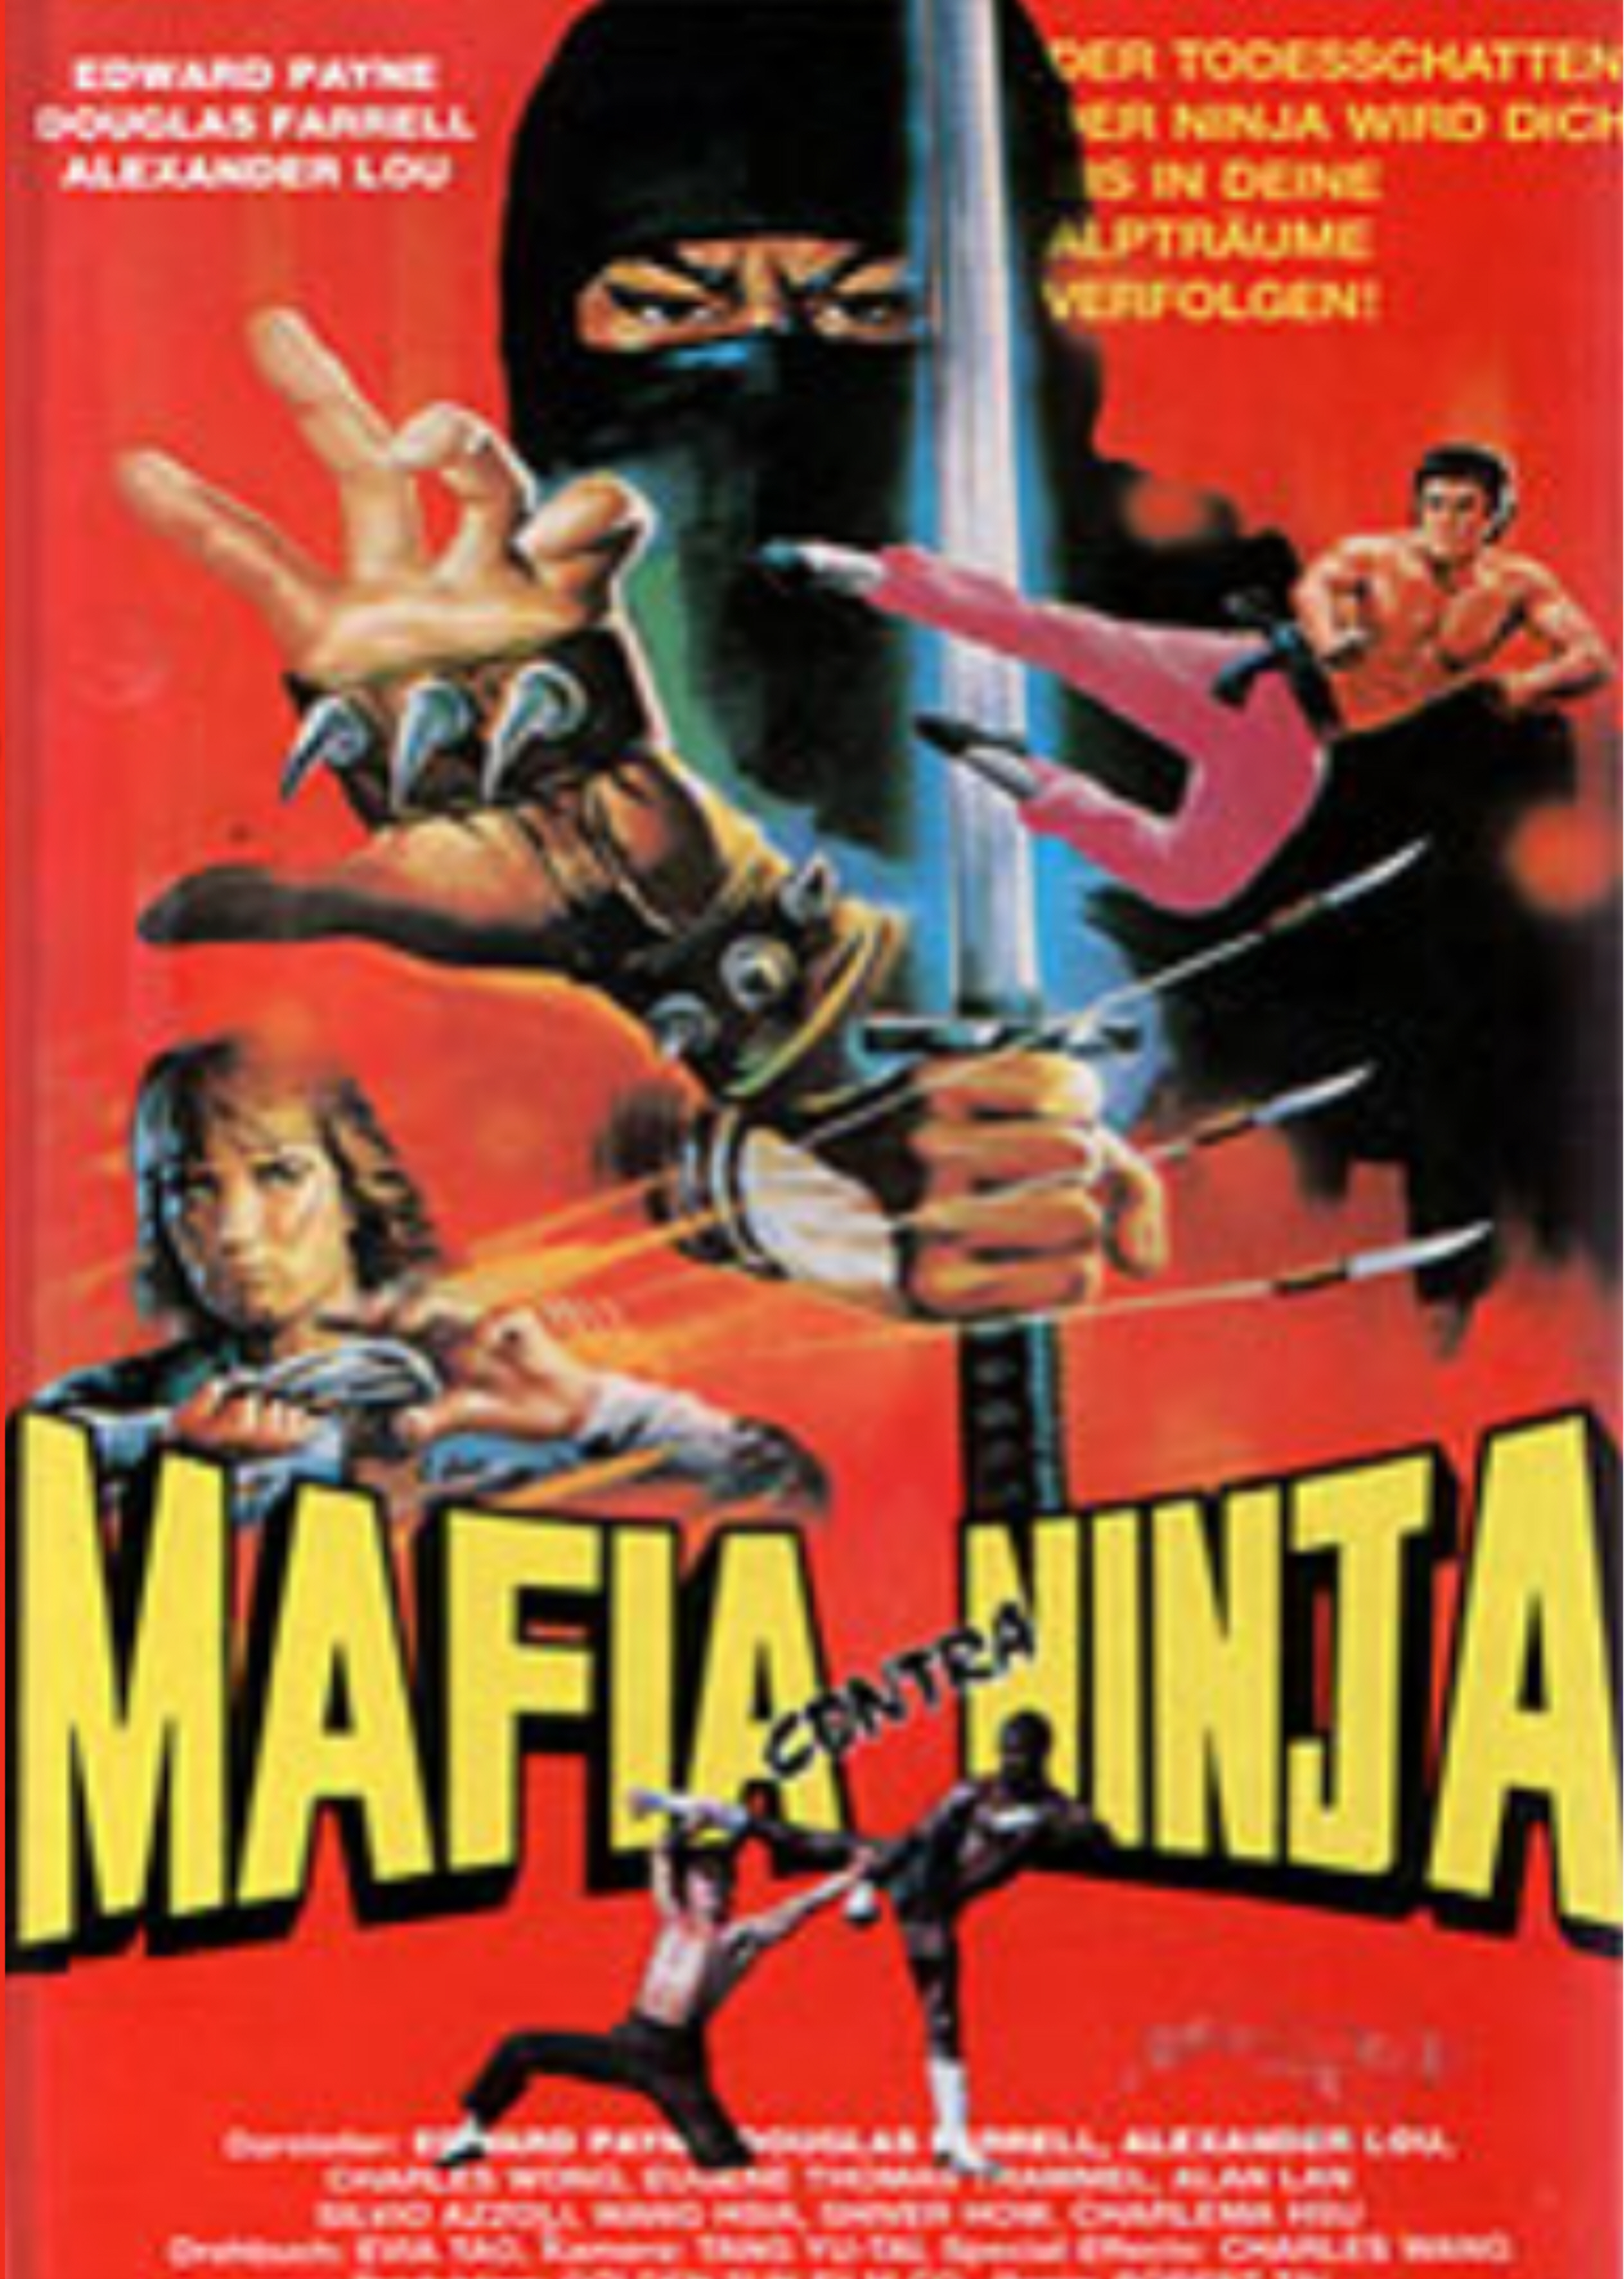 Shaolin Fighters Vs. Ninja [1981]